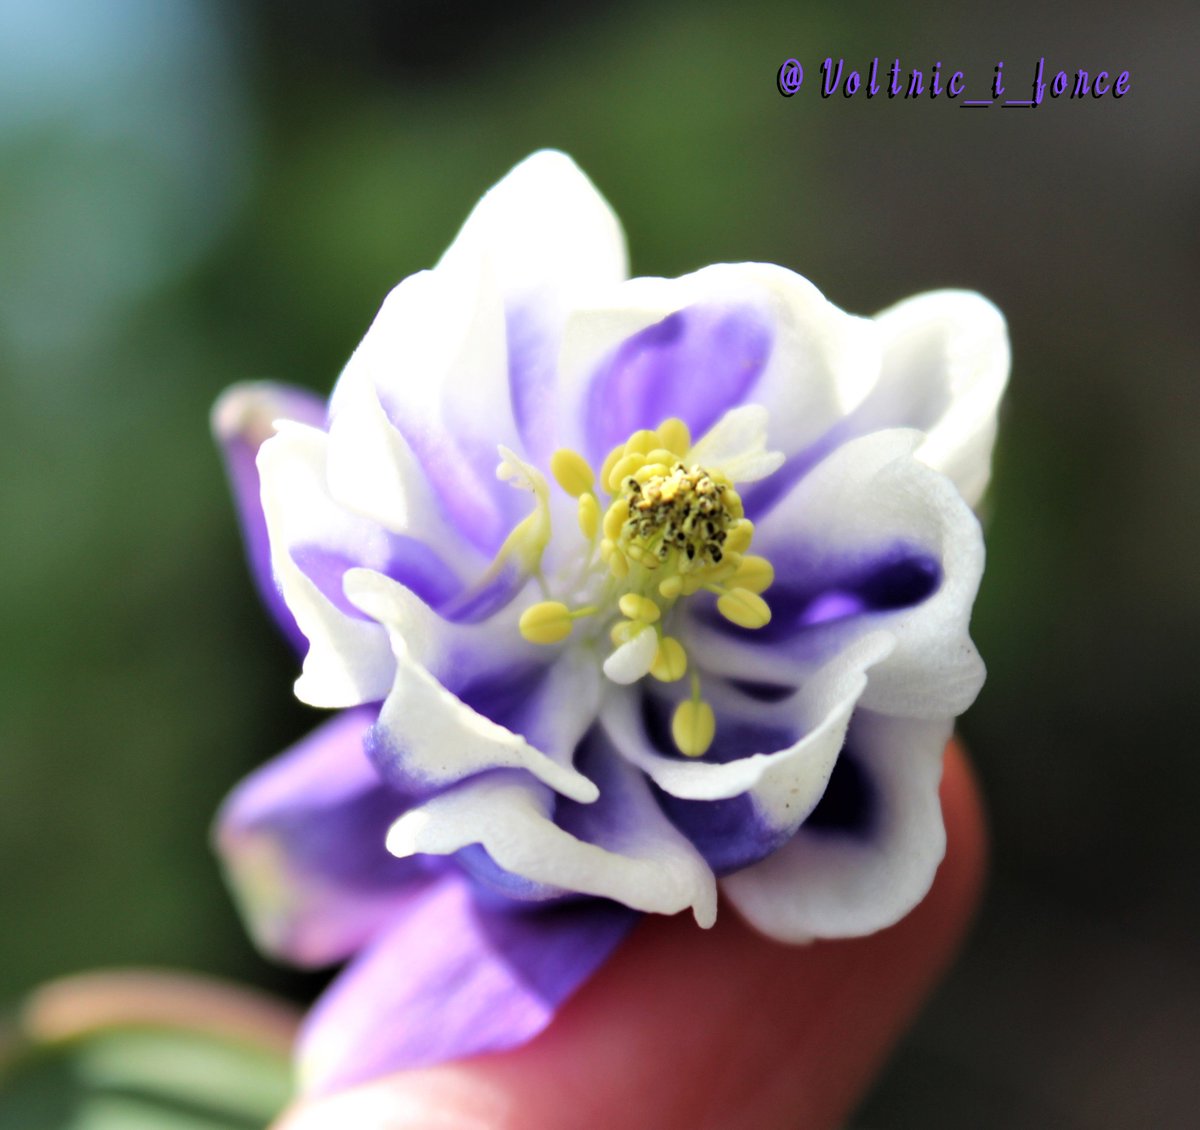 Vtifカスタマイズ No Twitter 一つ一つの花は結構小さいんだけど とてもとても艶やかな苧環 オダマキ さん 4月に撮影 5月18日 誕生花の一つ オダマキ 花言葉の中から 必ず手に入れる 勝利 素直